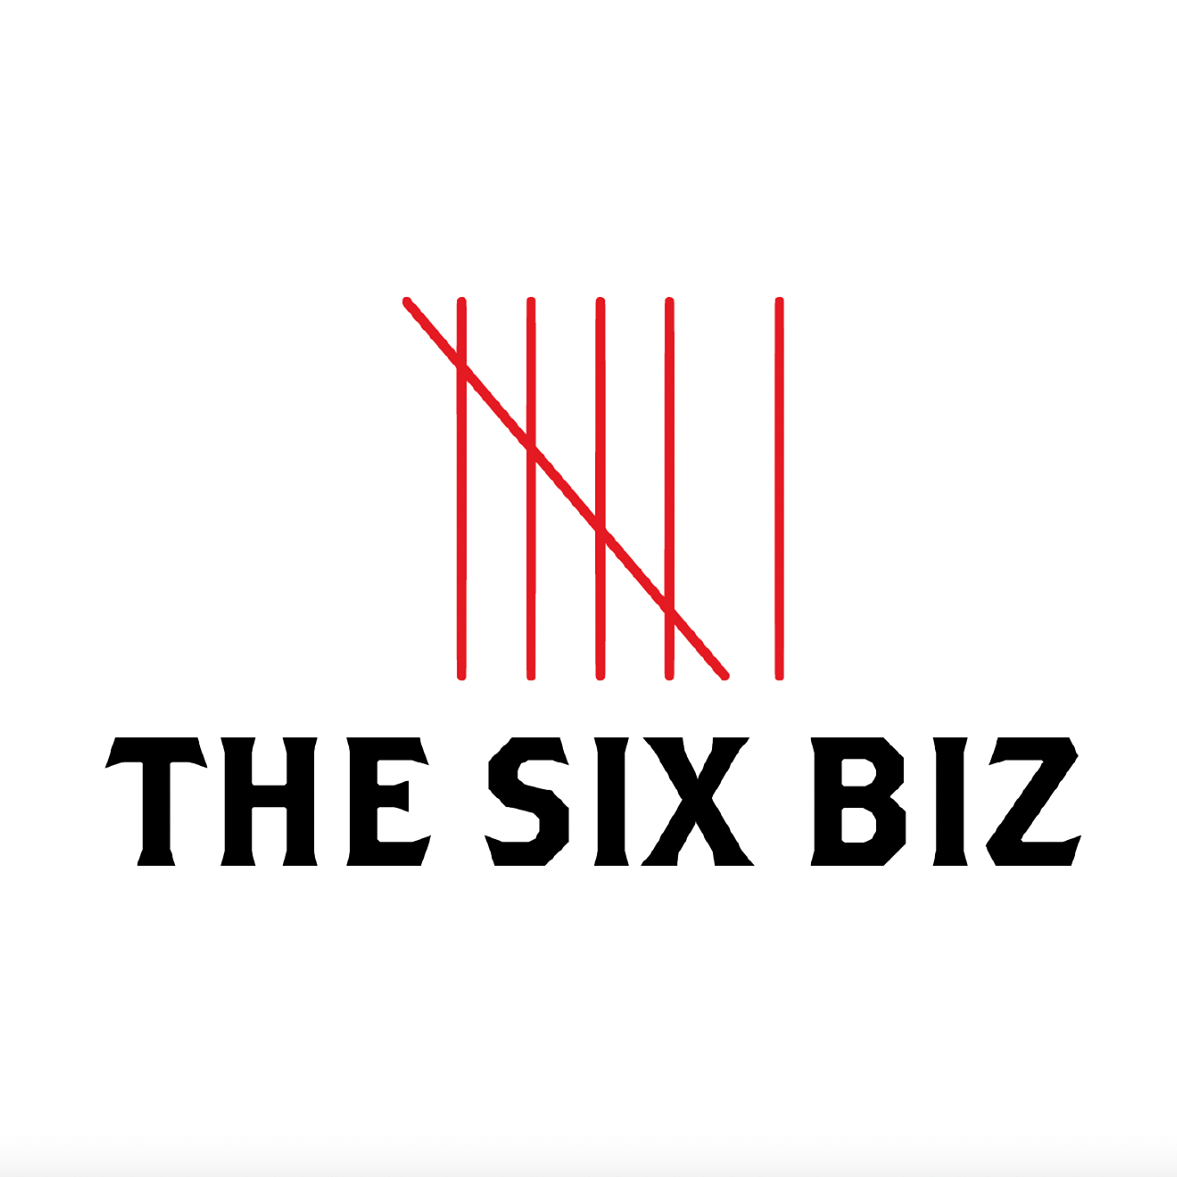 The Six Biz Inc